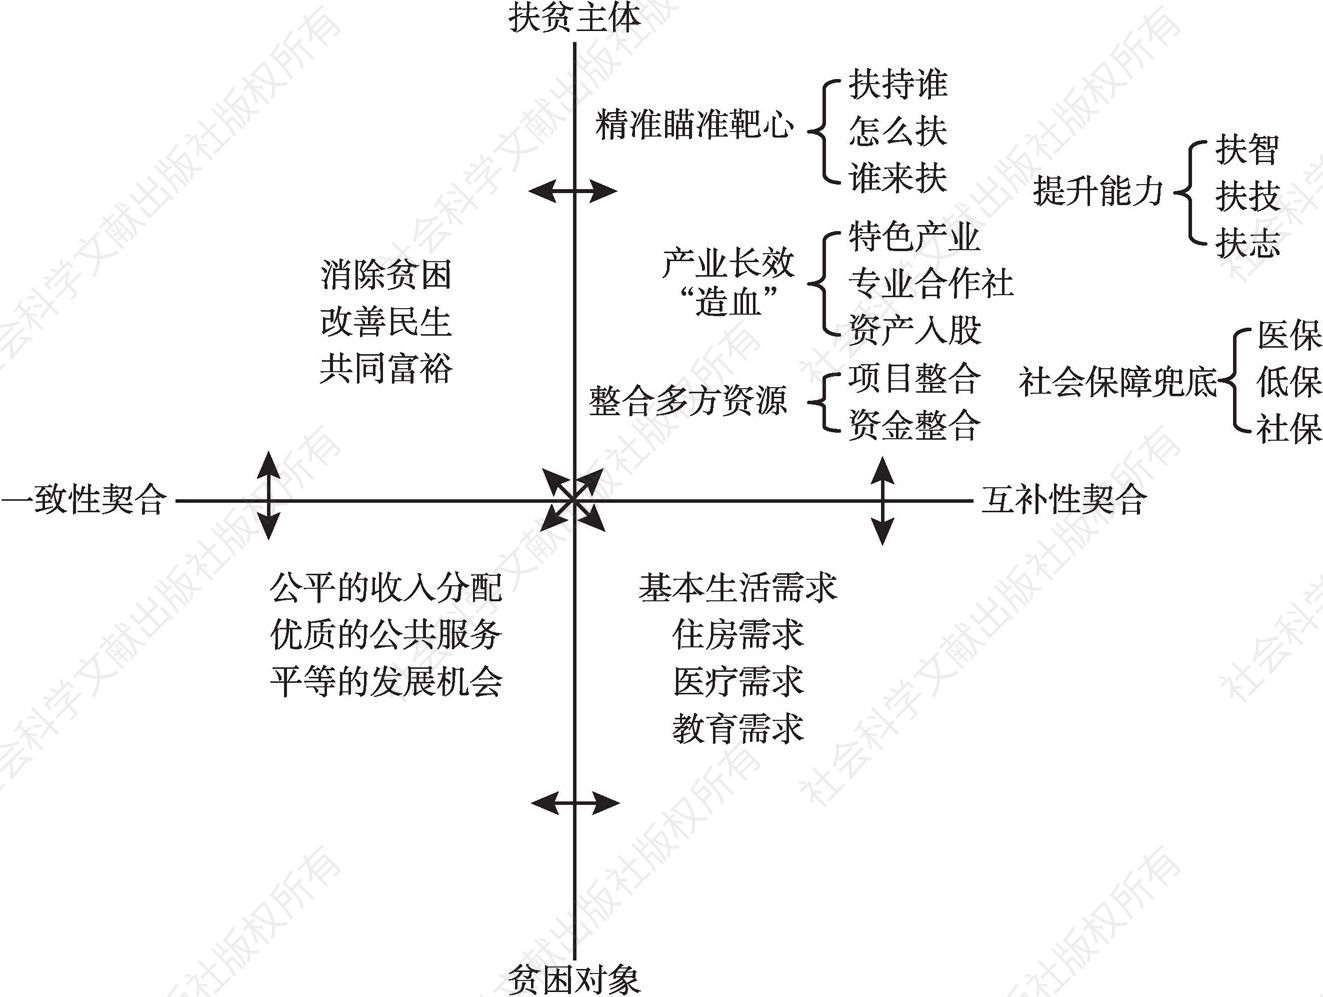 图1 井冈山以满足需求为导向的“契合型”扶贫模式